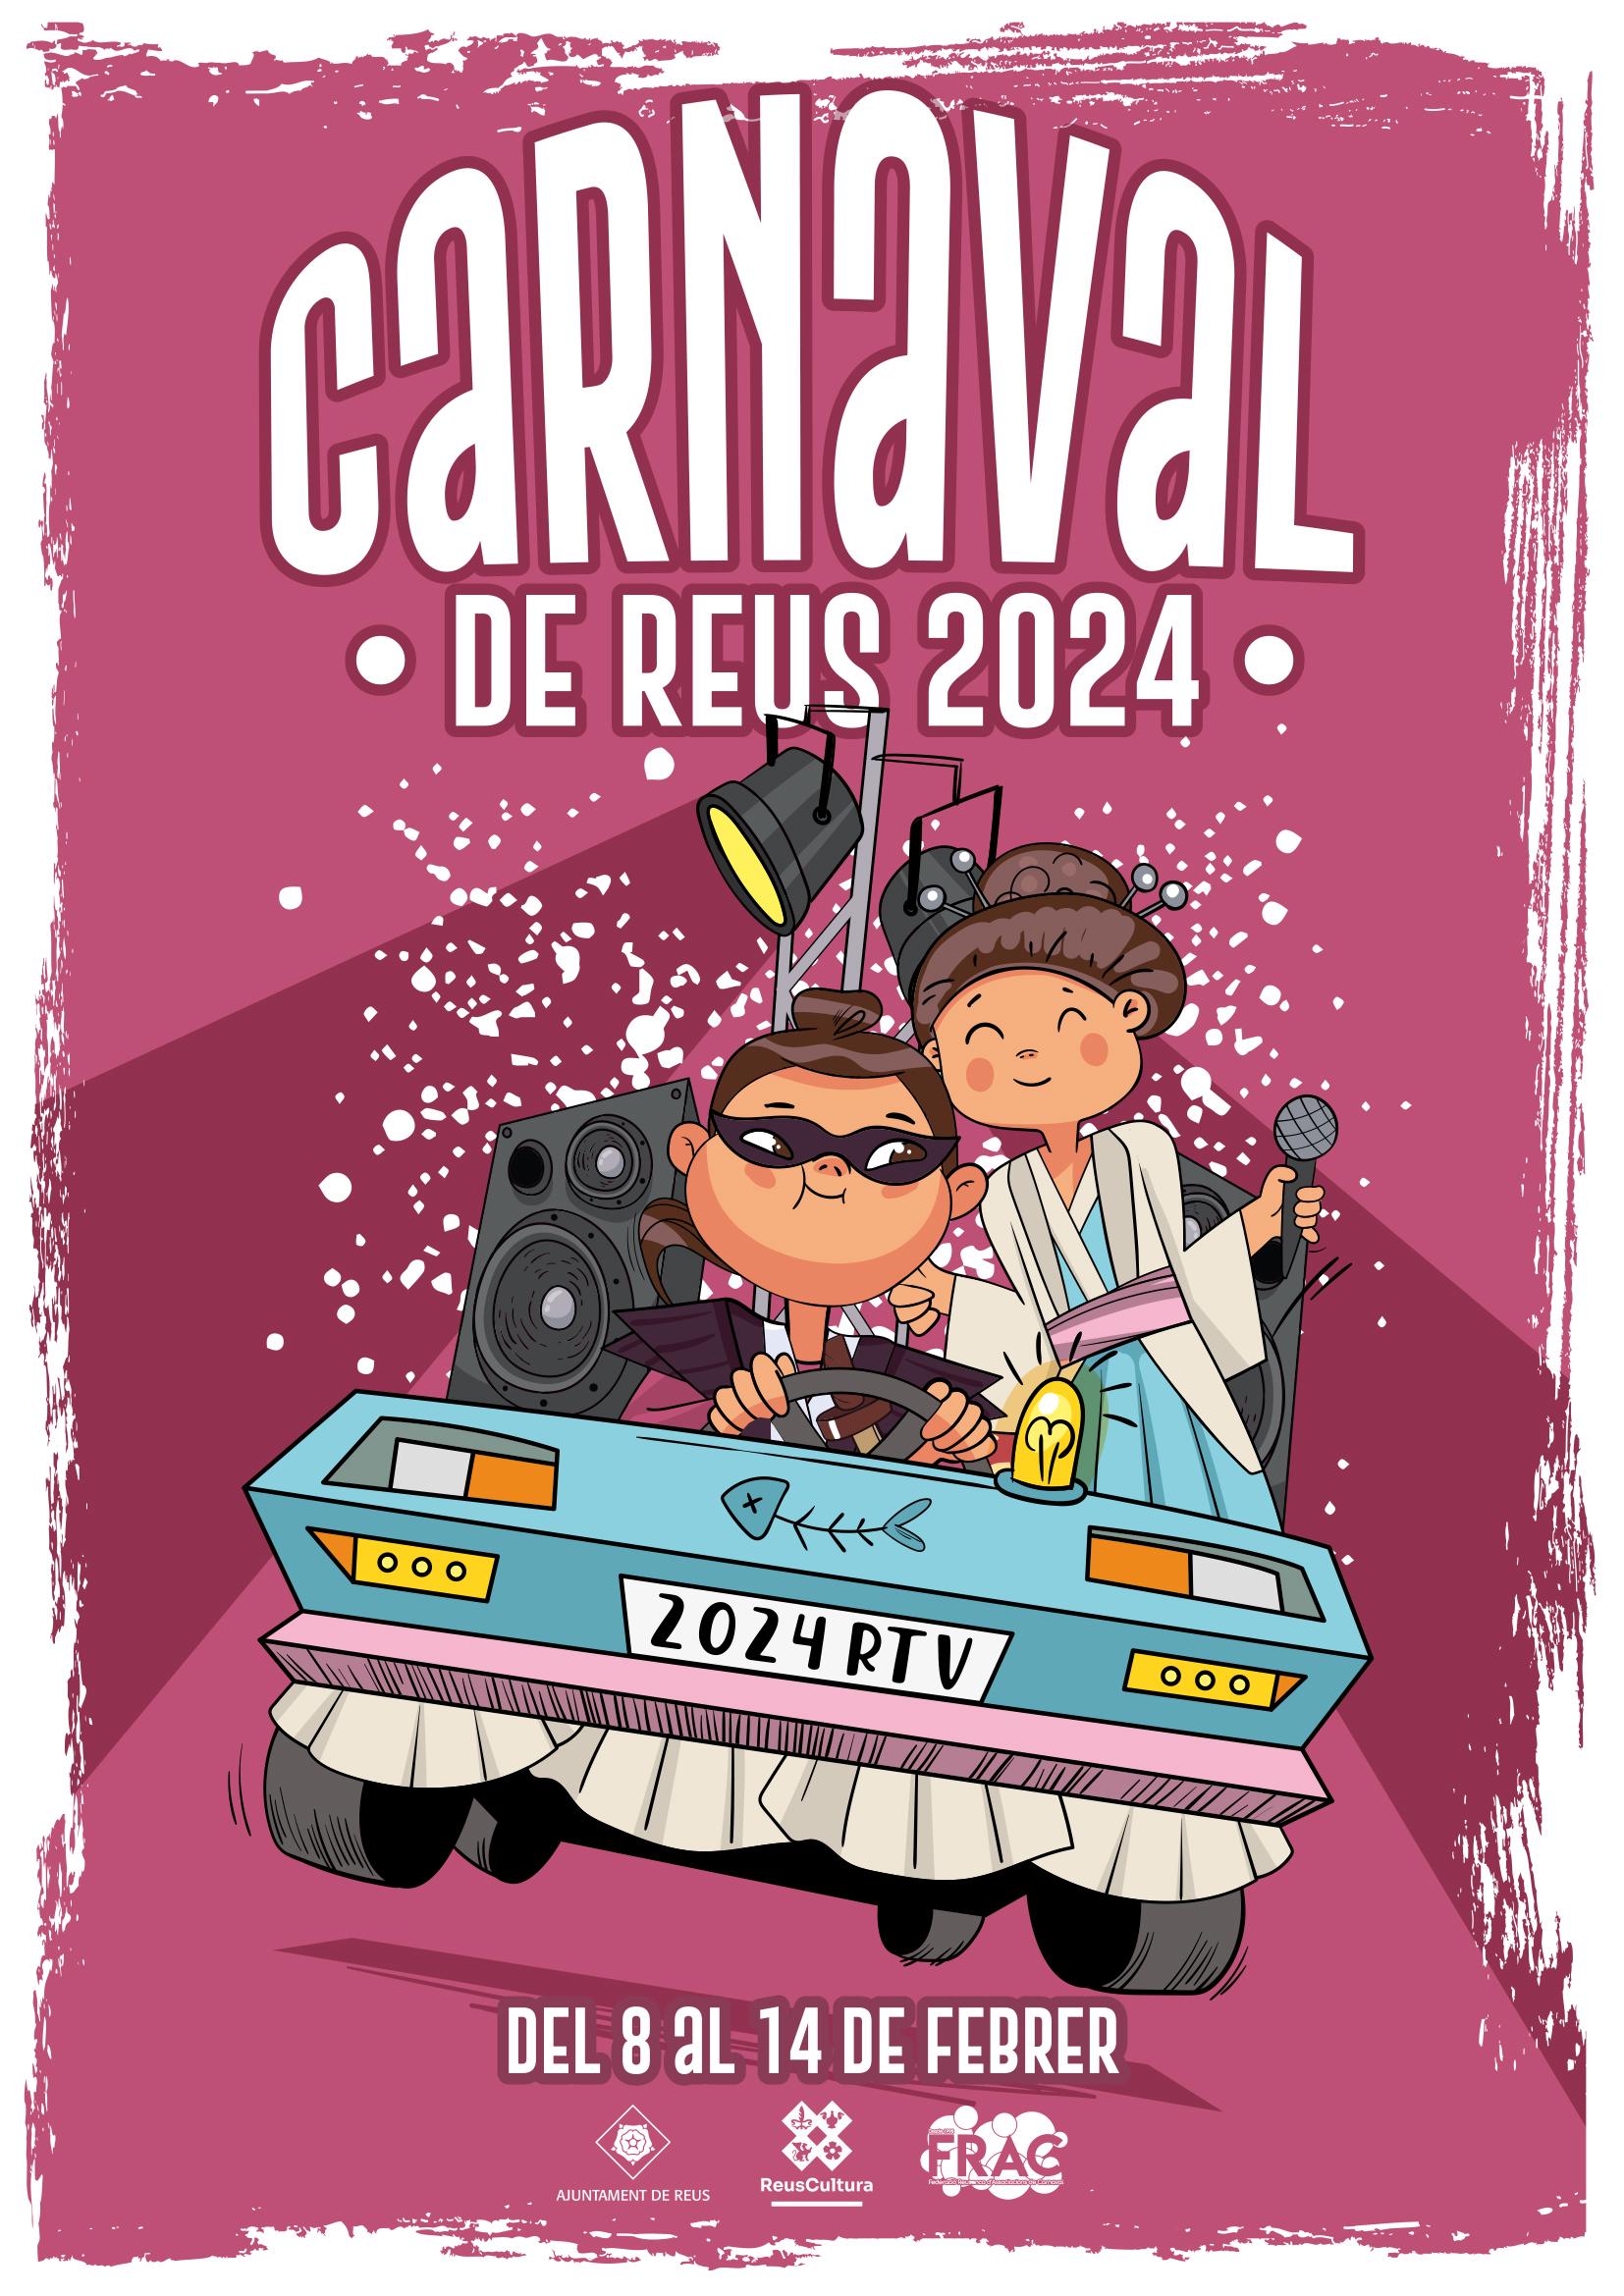 Carnaval - Cerimonial